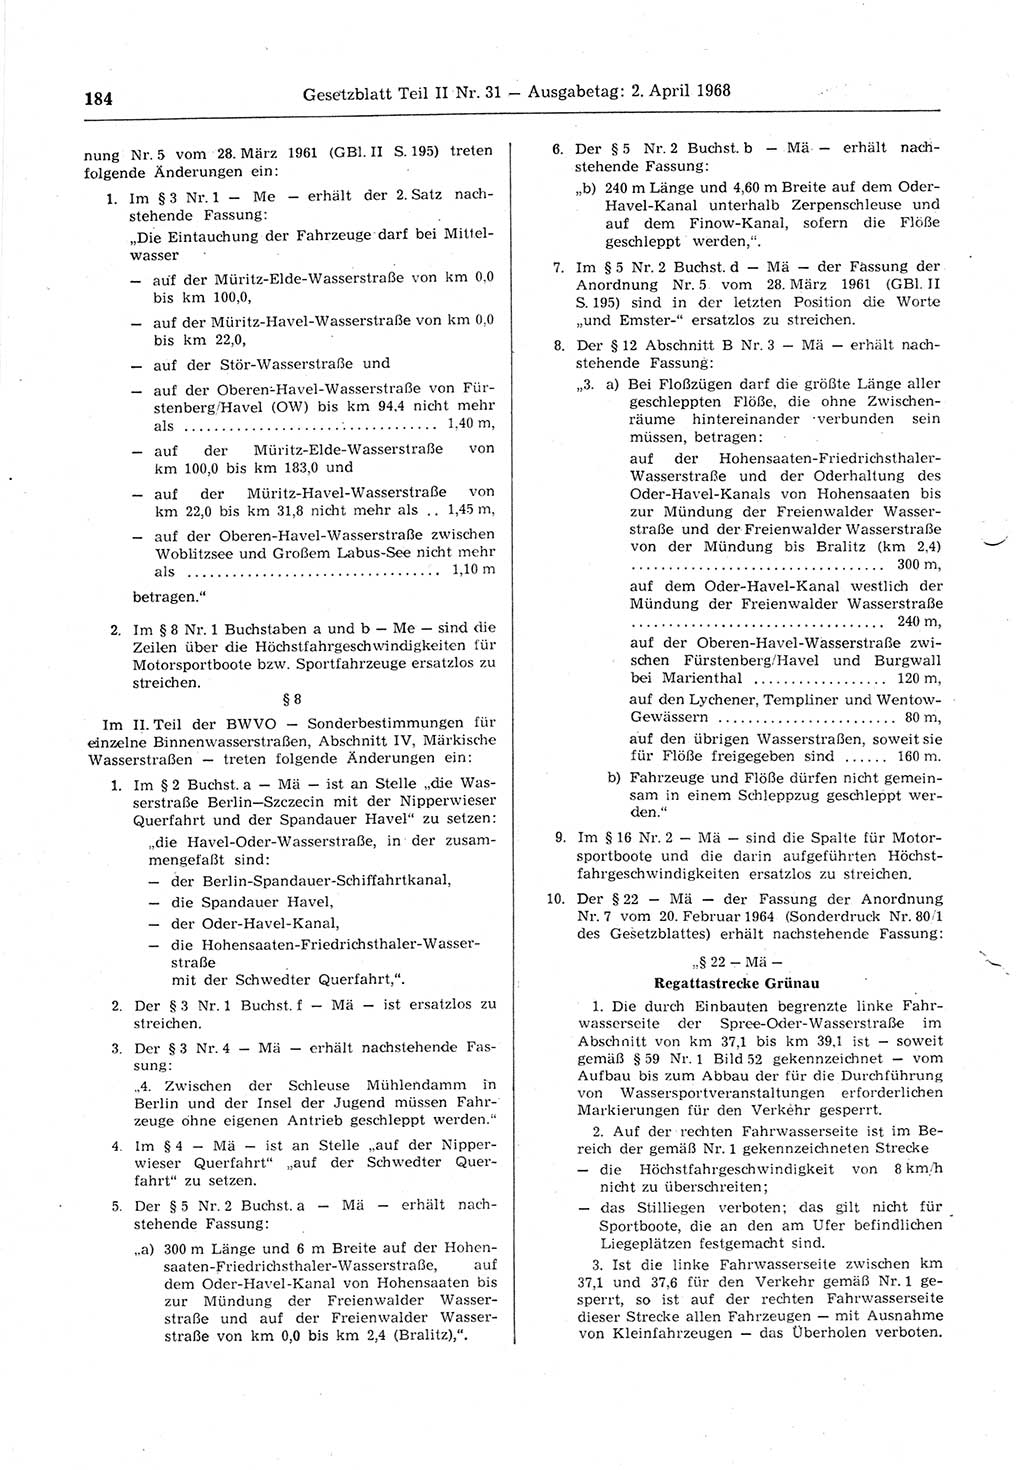 Gesetzblatt (GBl.) der Deutschen Demokratischen Republik (DDR) Teil ⅠⅠ 1968, Seite 184 (GBl. DDR ⅠⅠ 1968, S. 184)